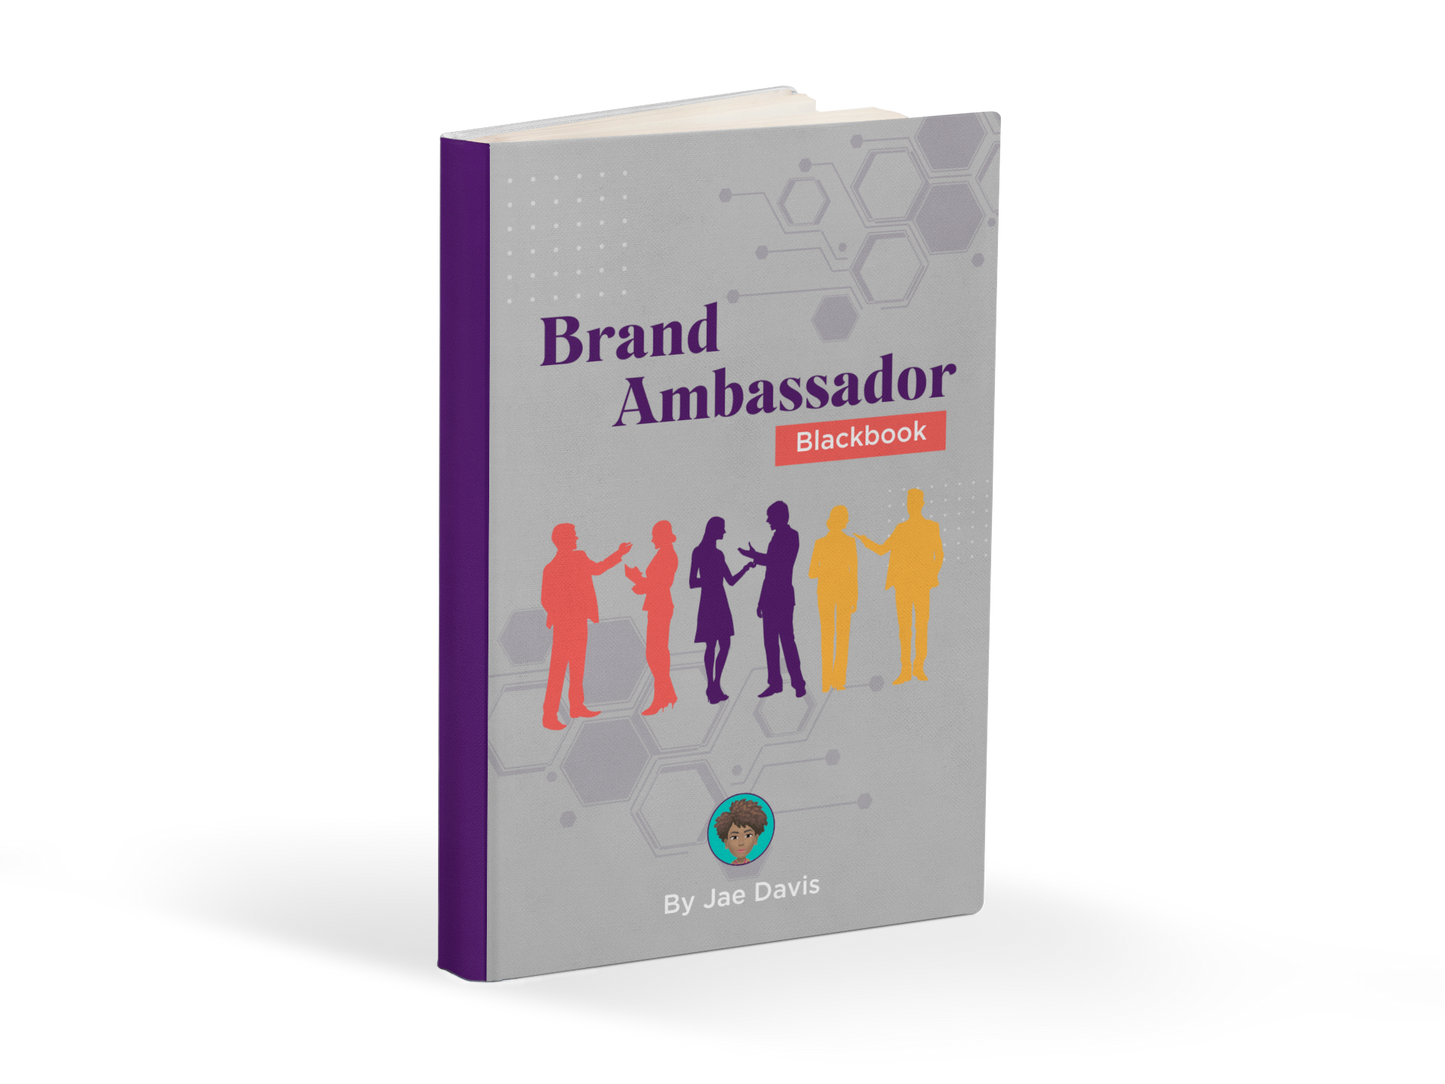 Brand Ambassador Blackbook